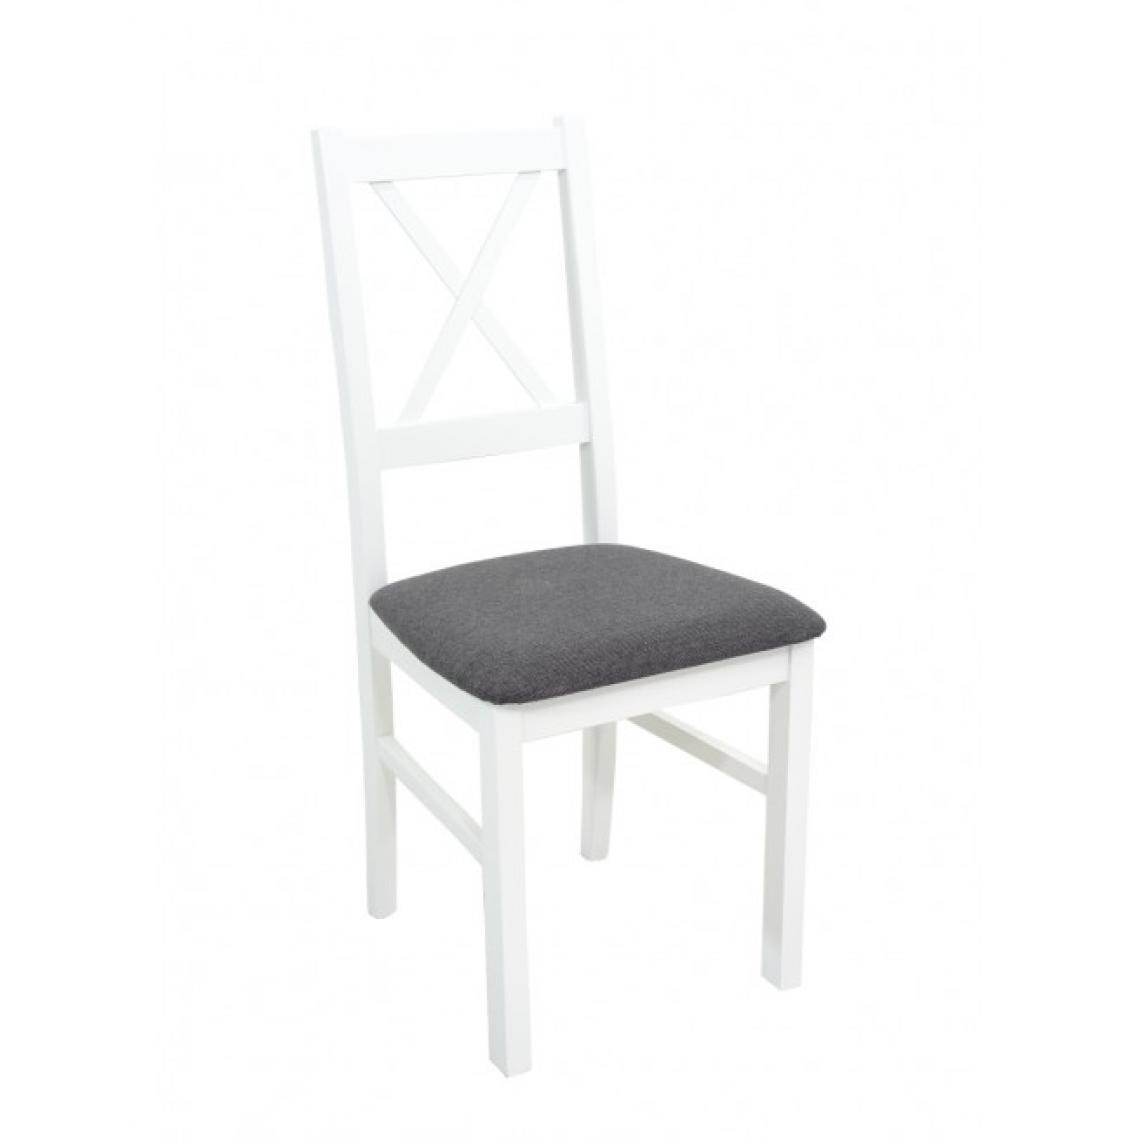 Hucoco - FIORI - Chaise en bois style classique salle à manger cm - 43x40x94 - Assise rembourrée - Blanc - Chaises